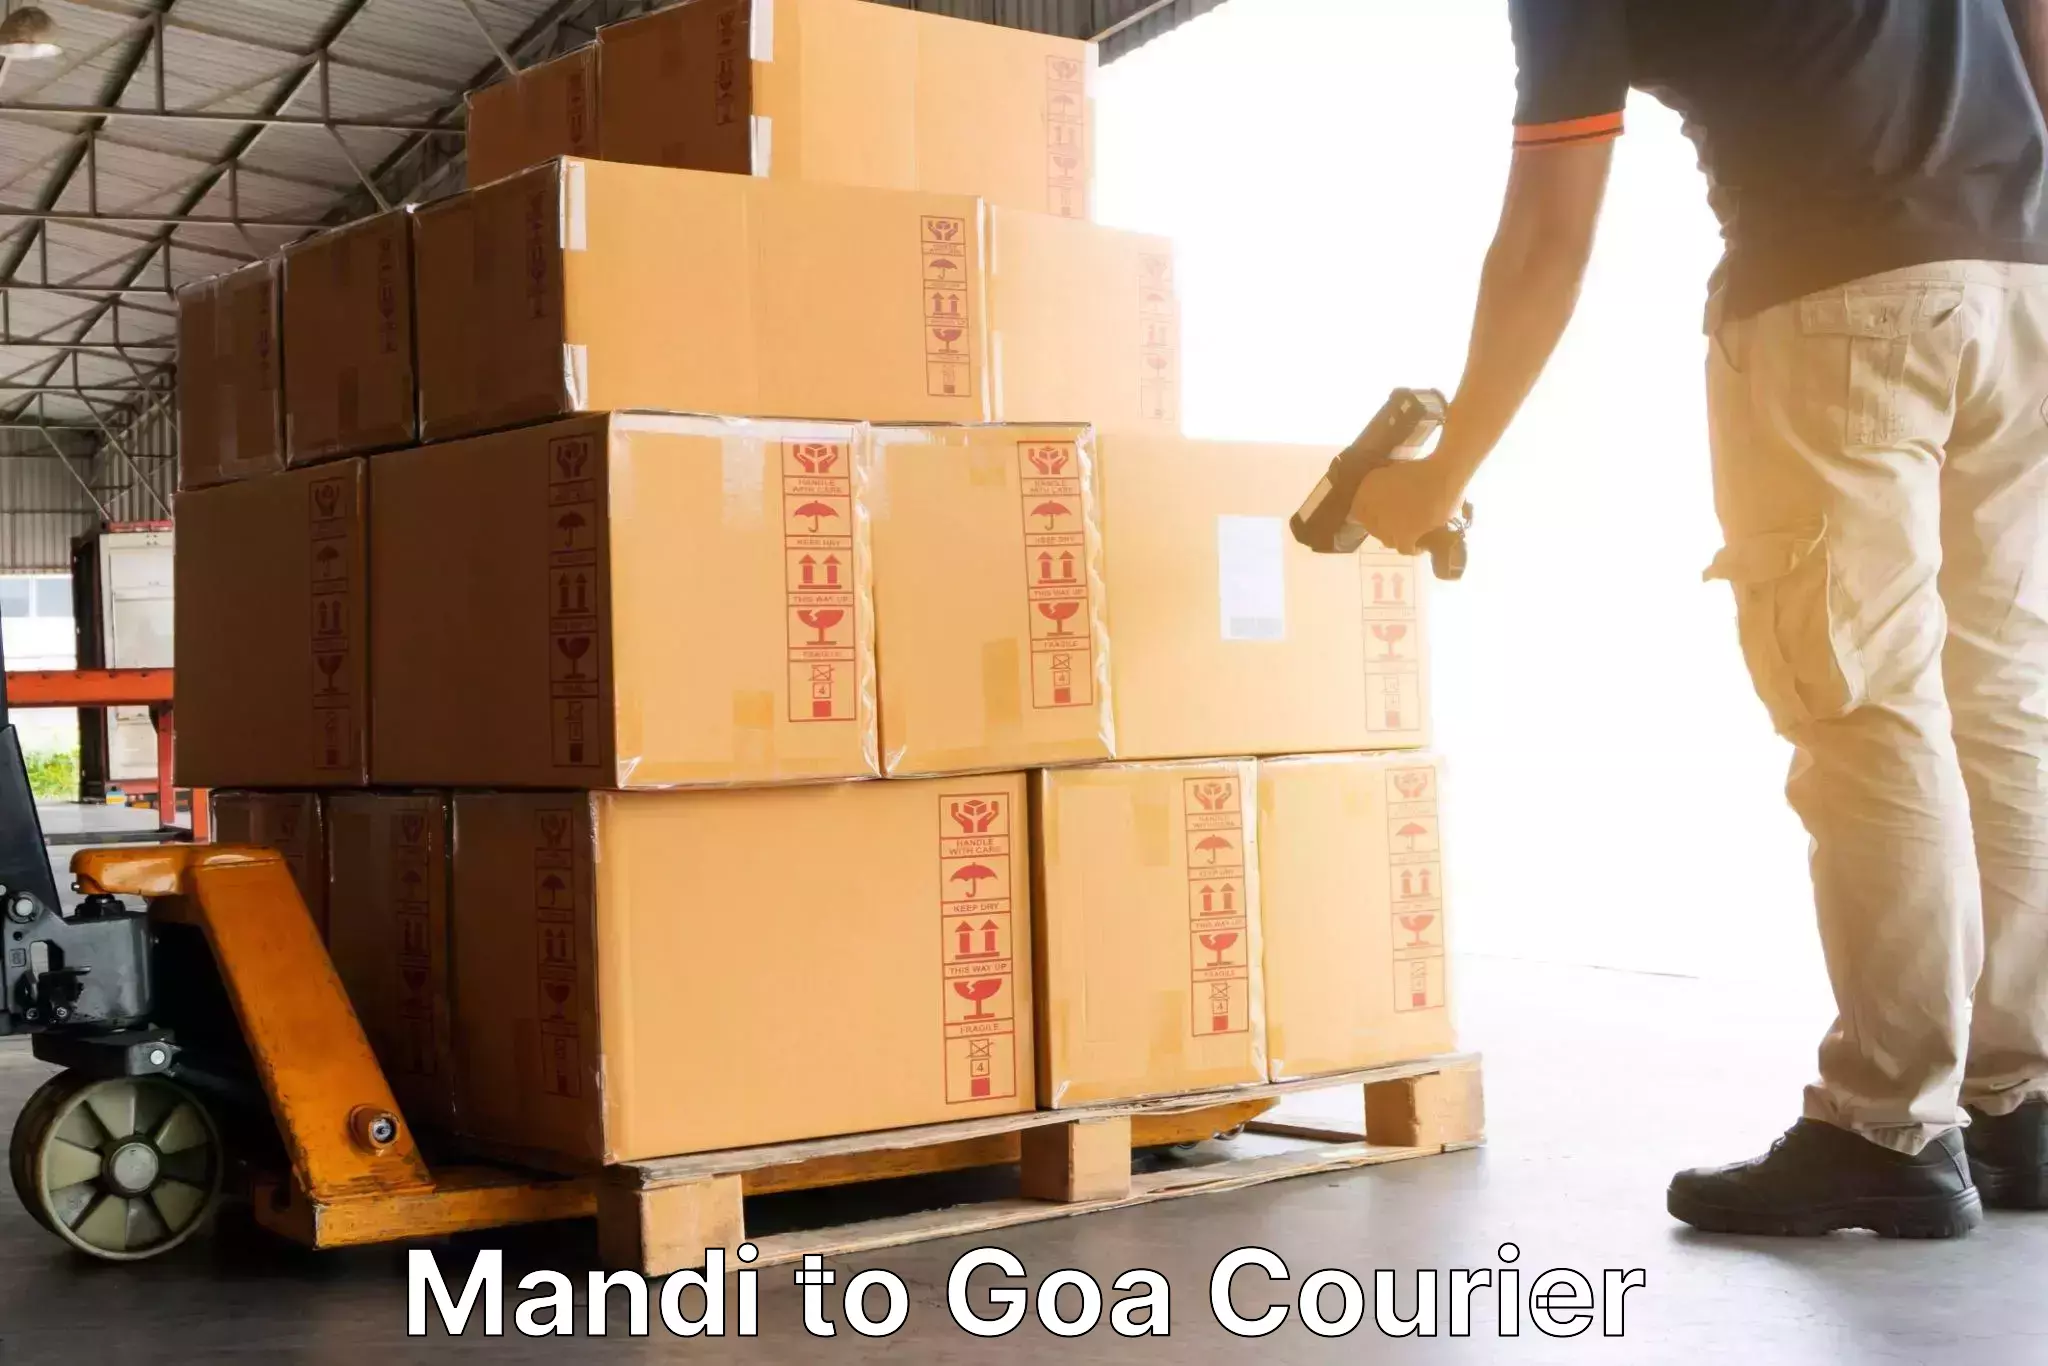 Customizable shipping options in Mandi to Ponda